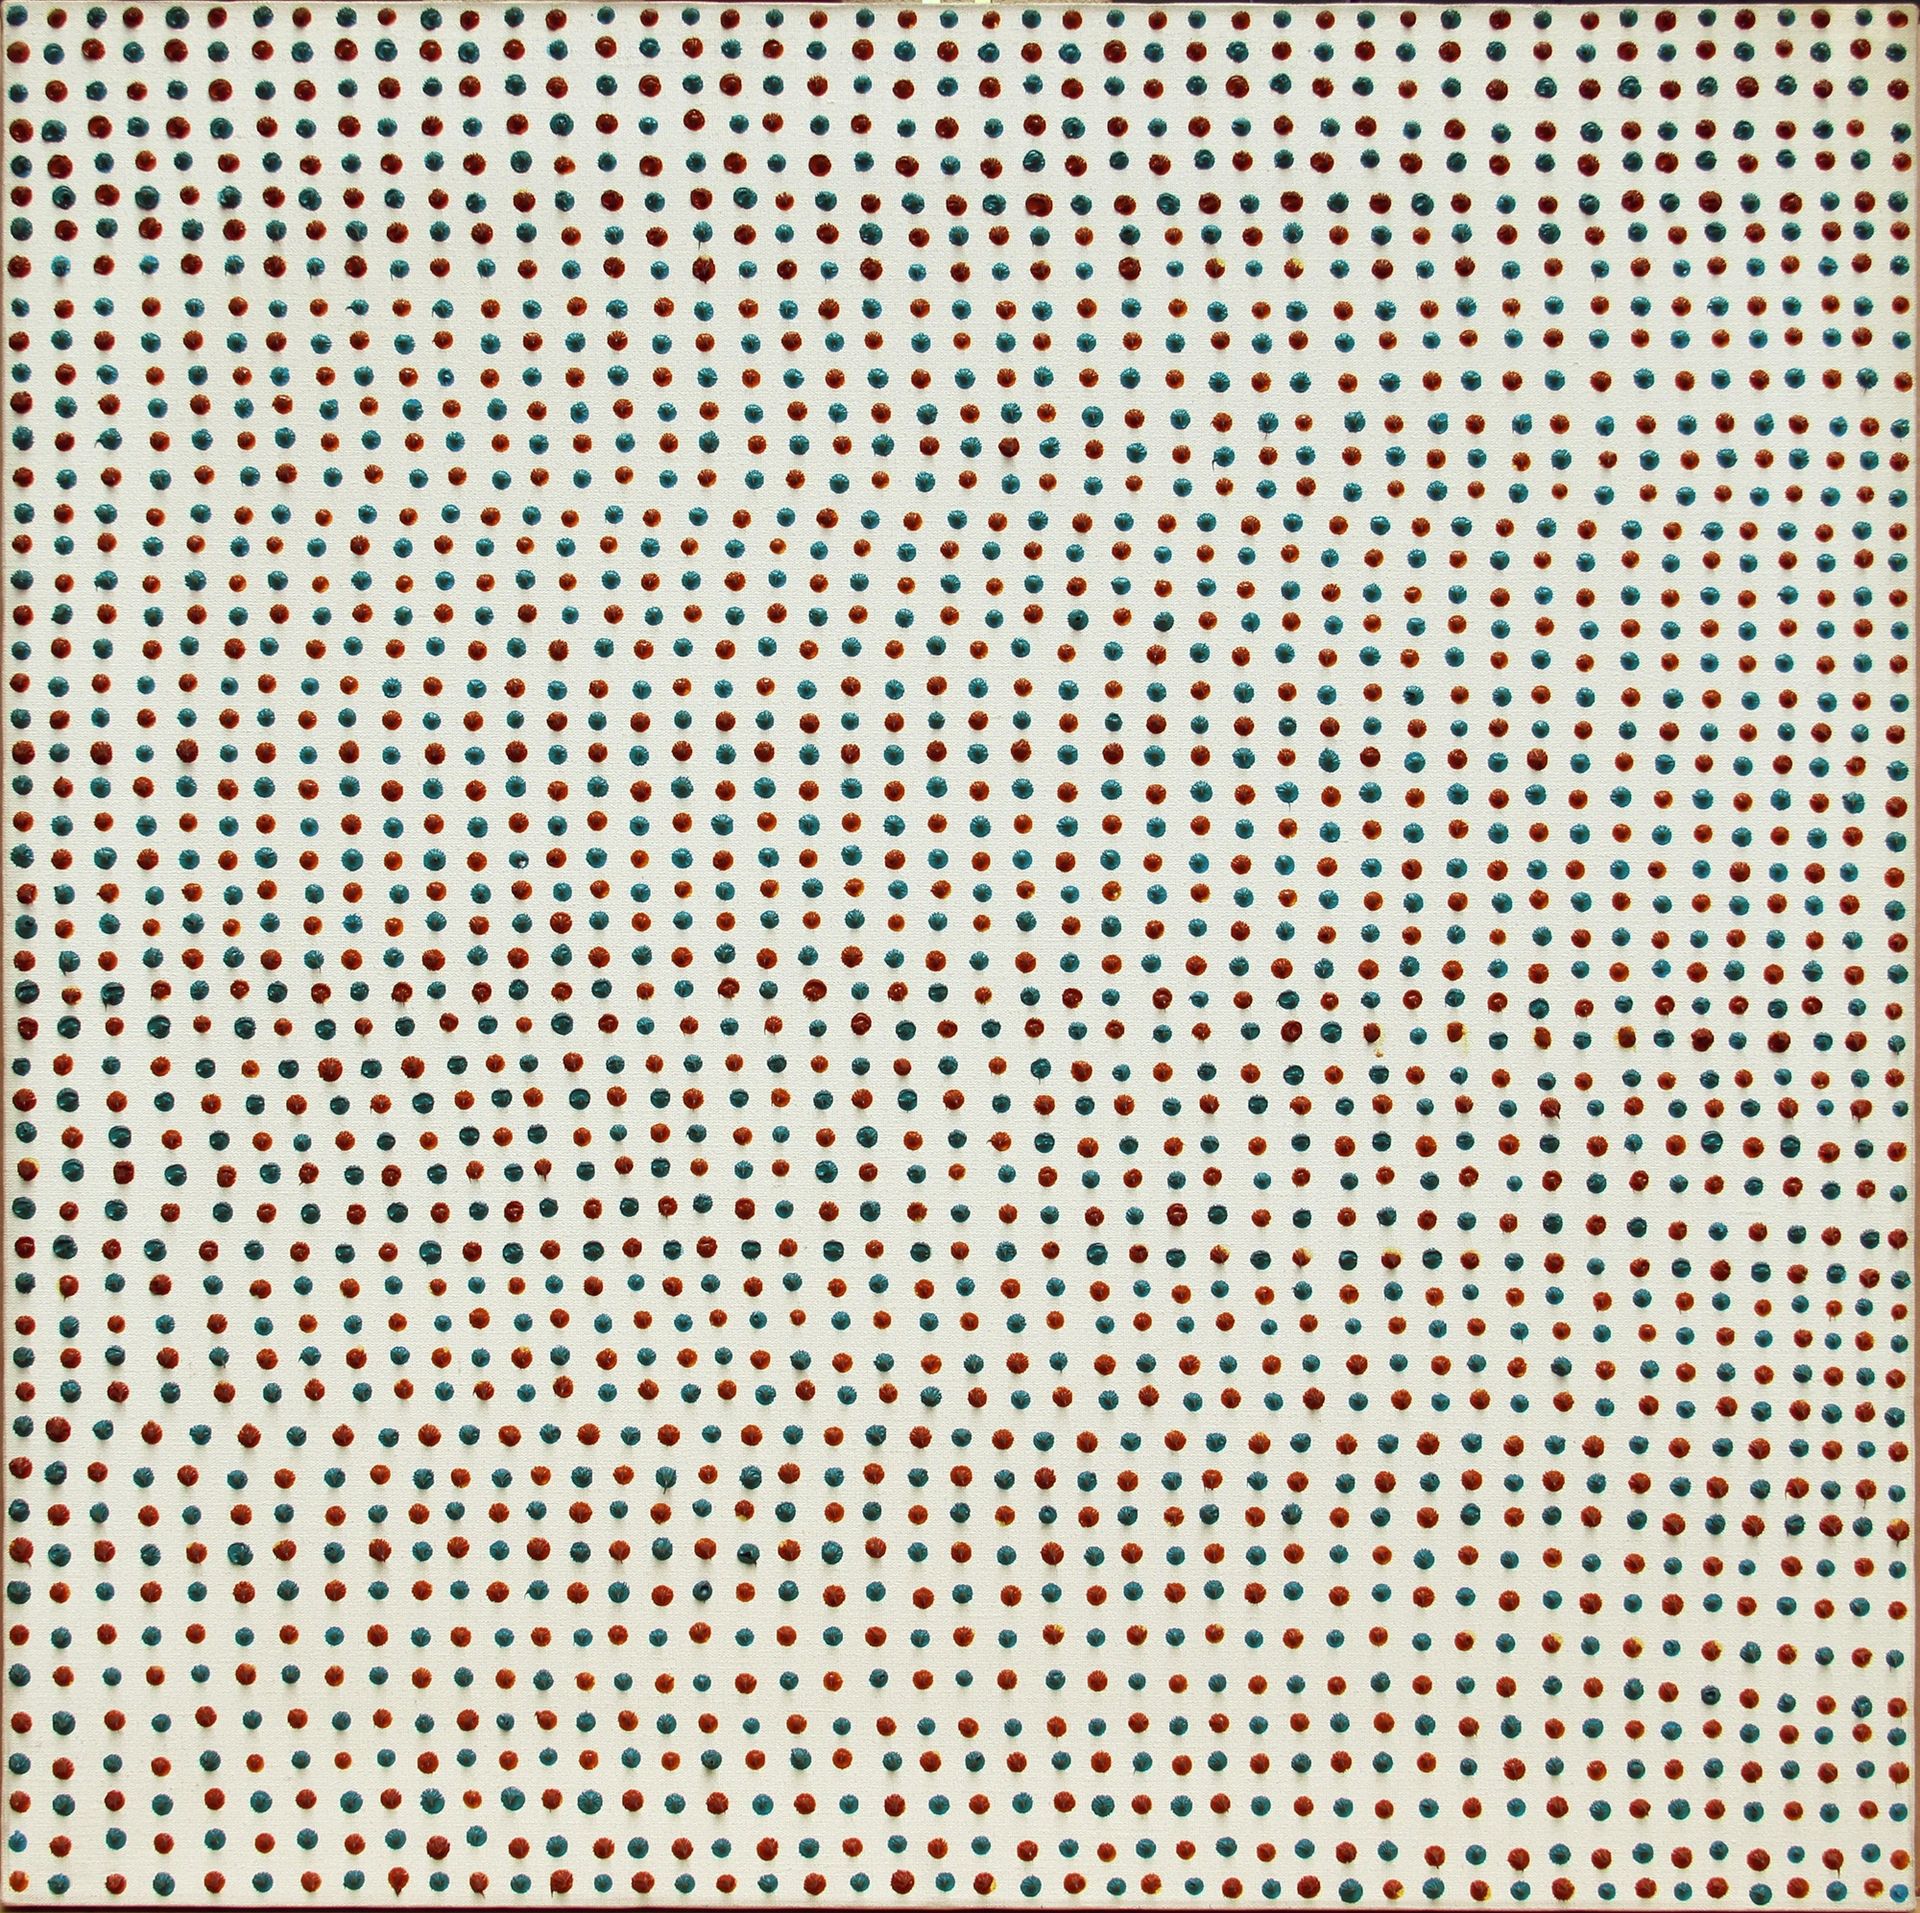 Franco BEMPORAD 2392 Punti 1975, Öl auf Leinwand, cm. 90x90



D. Astrologo, E. &hellip;